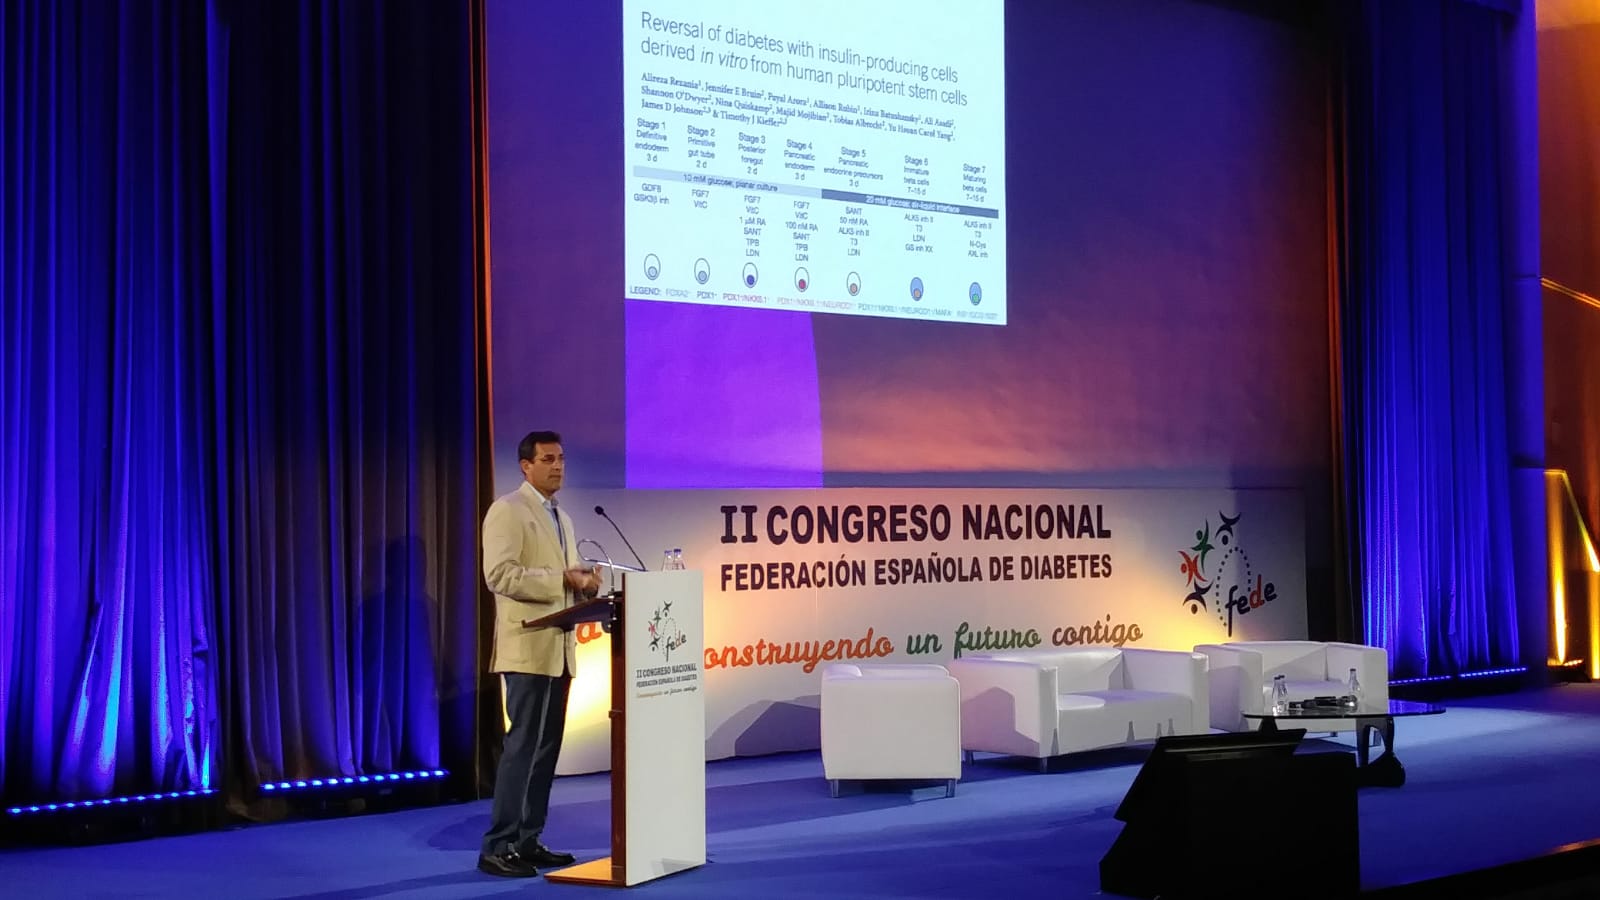 Juan Domínguez-Bendala: “La cura de la diabetes tipo 1 quizá no sea el avance revolucionario que muchos esperan